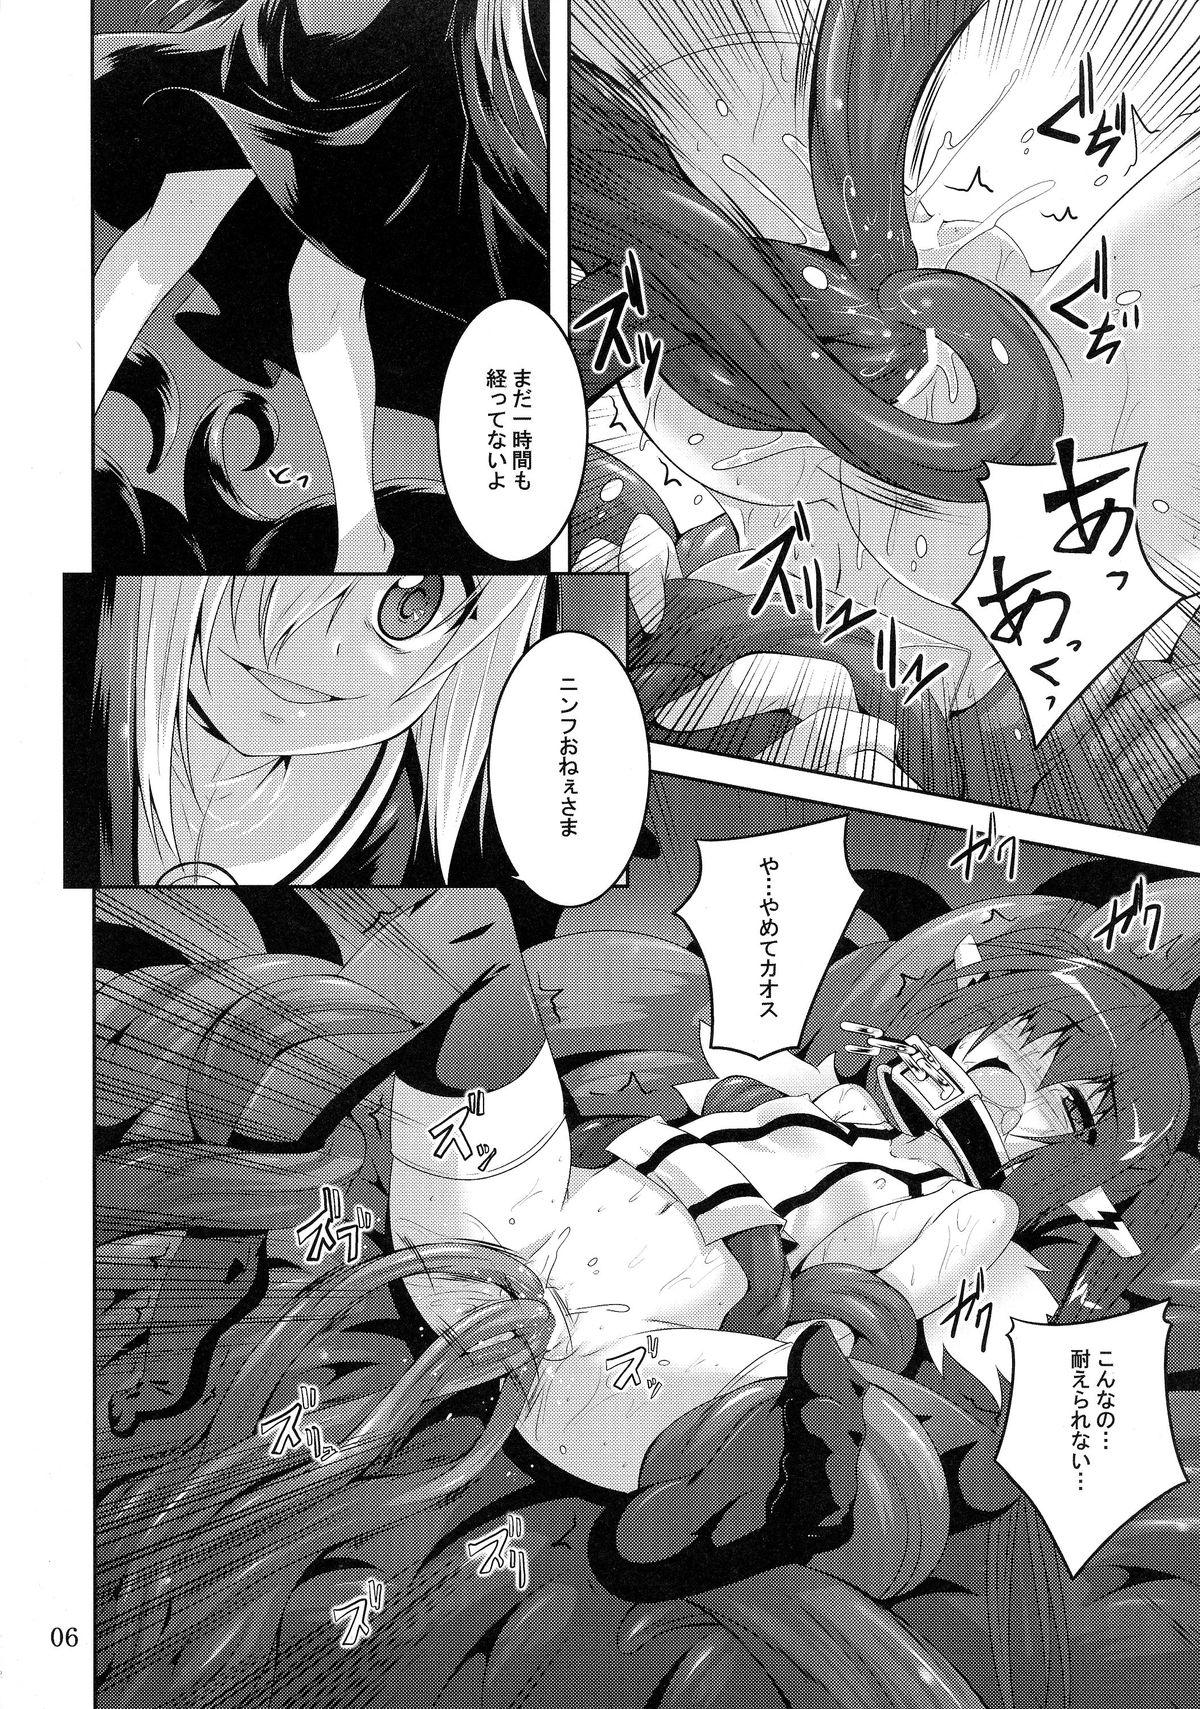 Assfucked β3 - Sora no otoshimono Gordibuena - Page 6